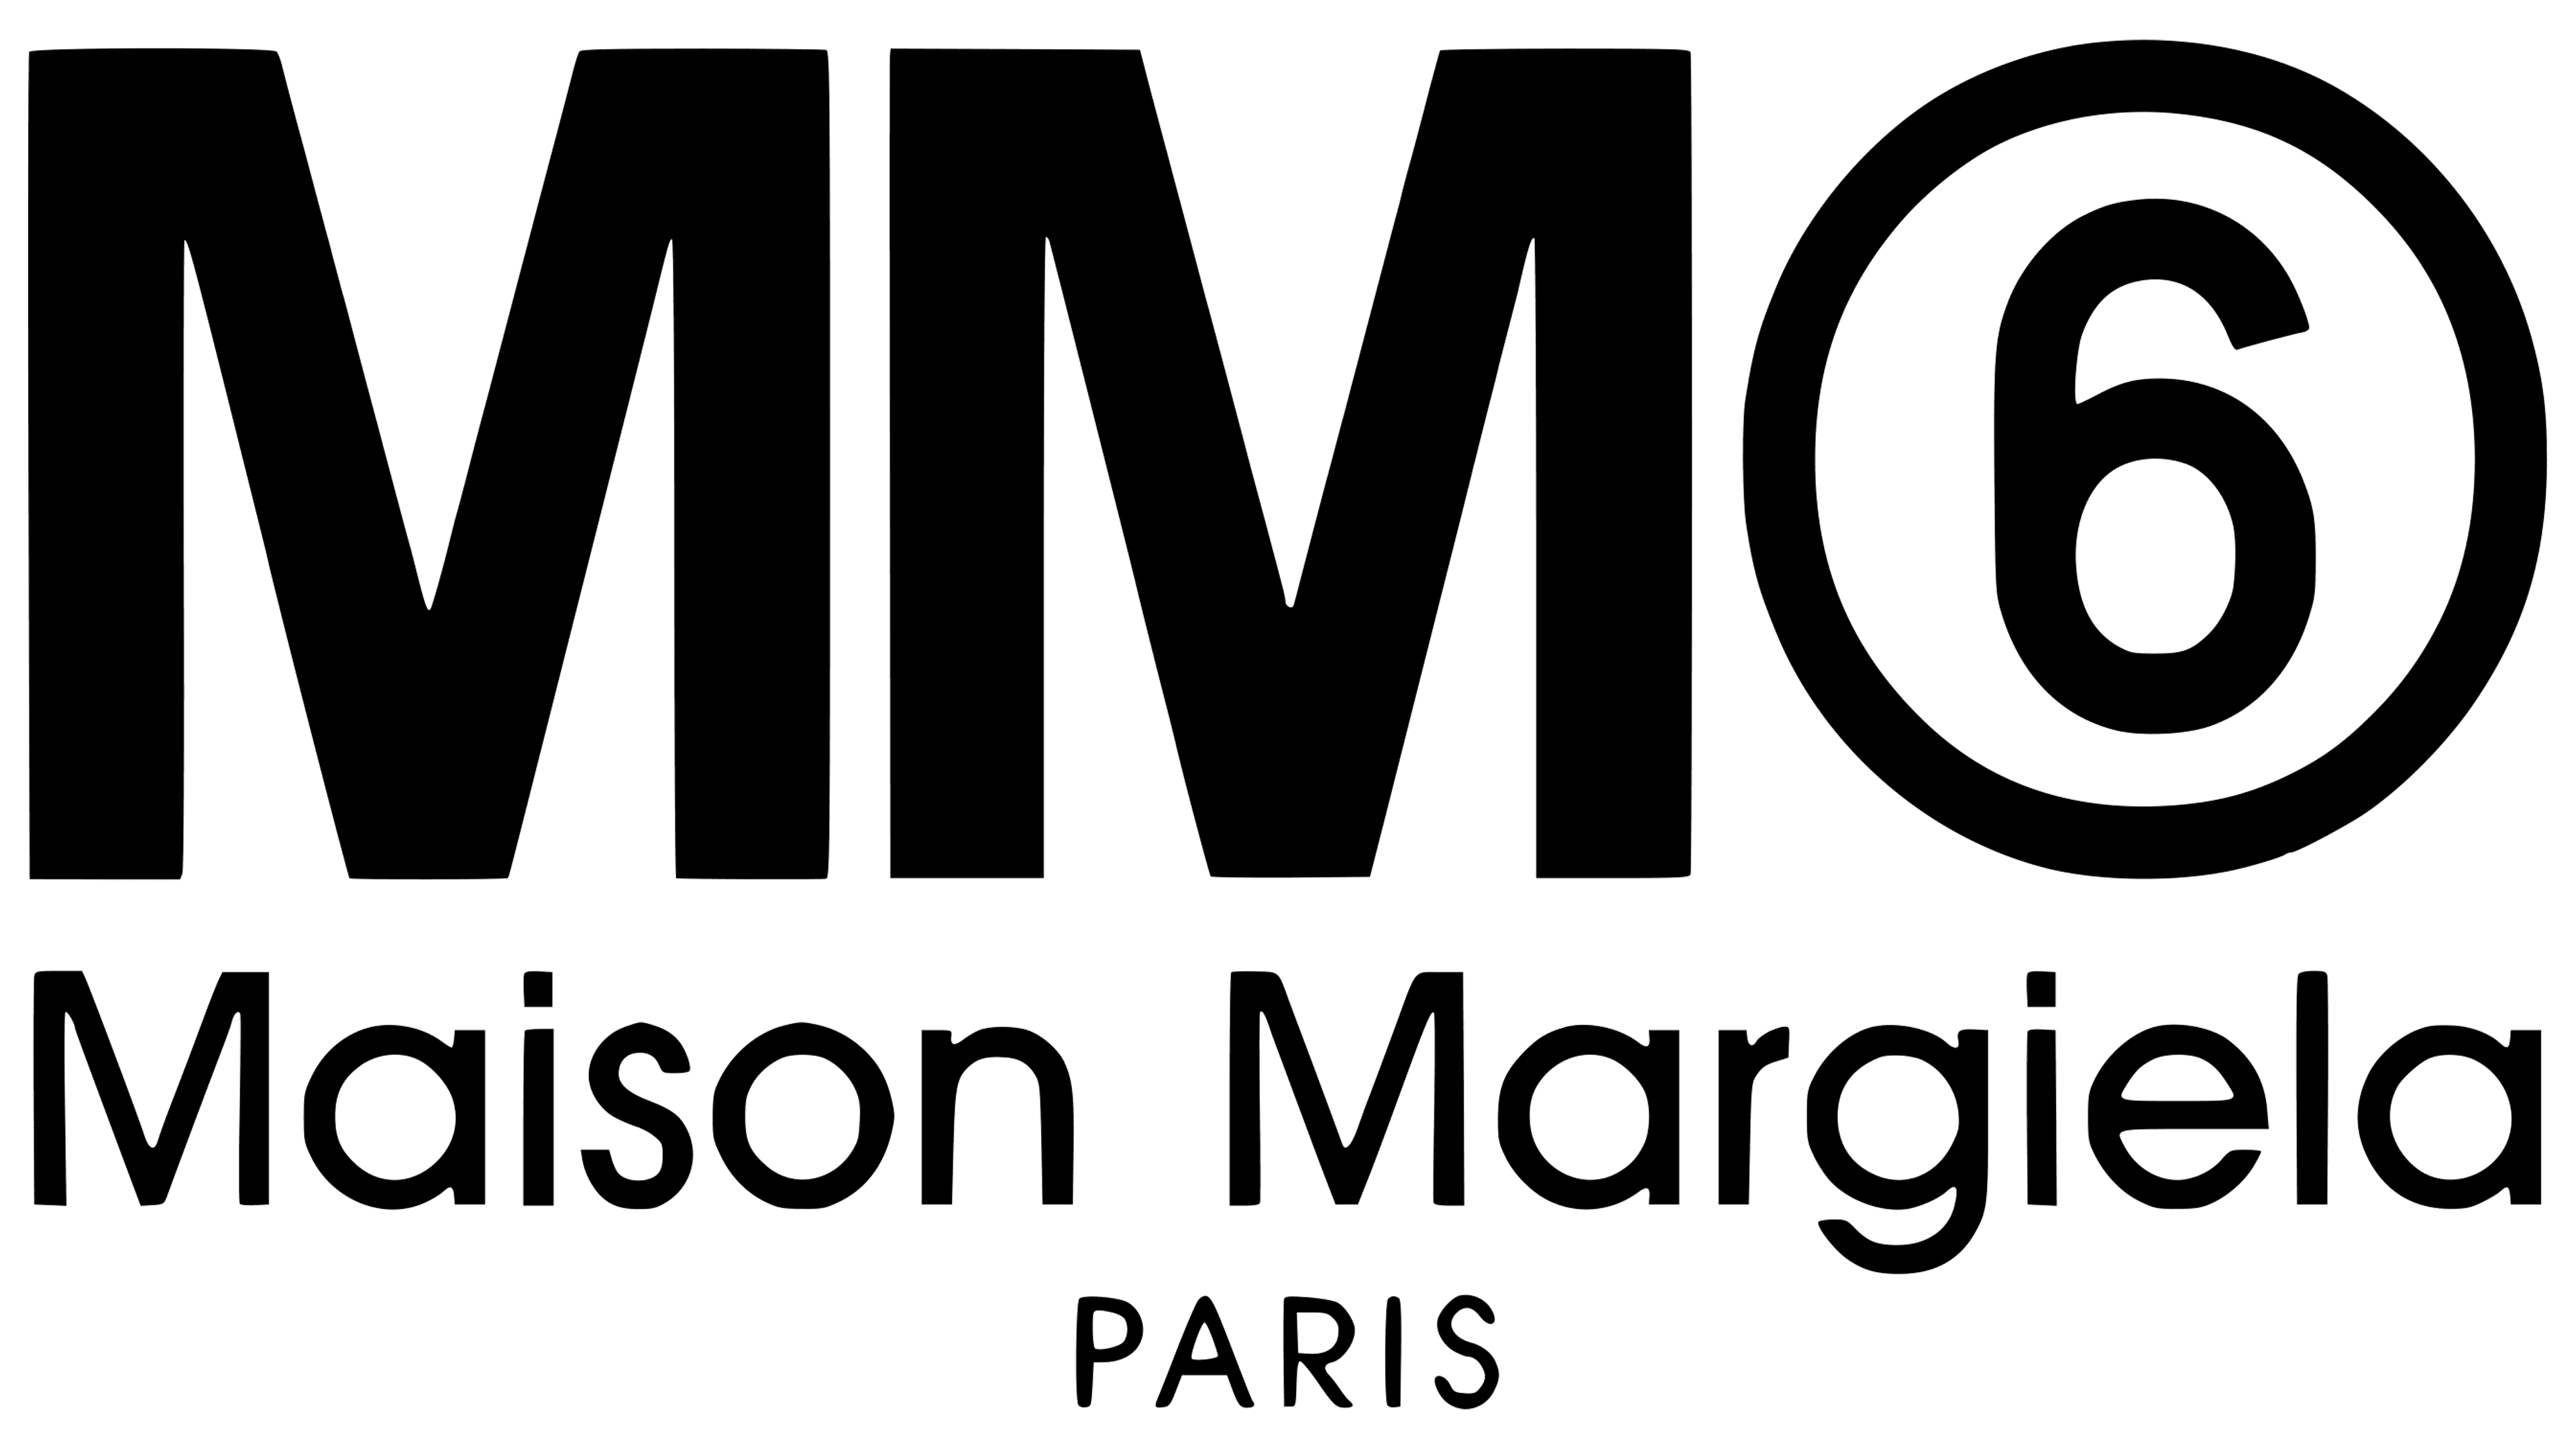 MM6 Maison Margiela Logo